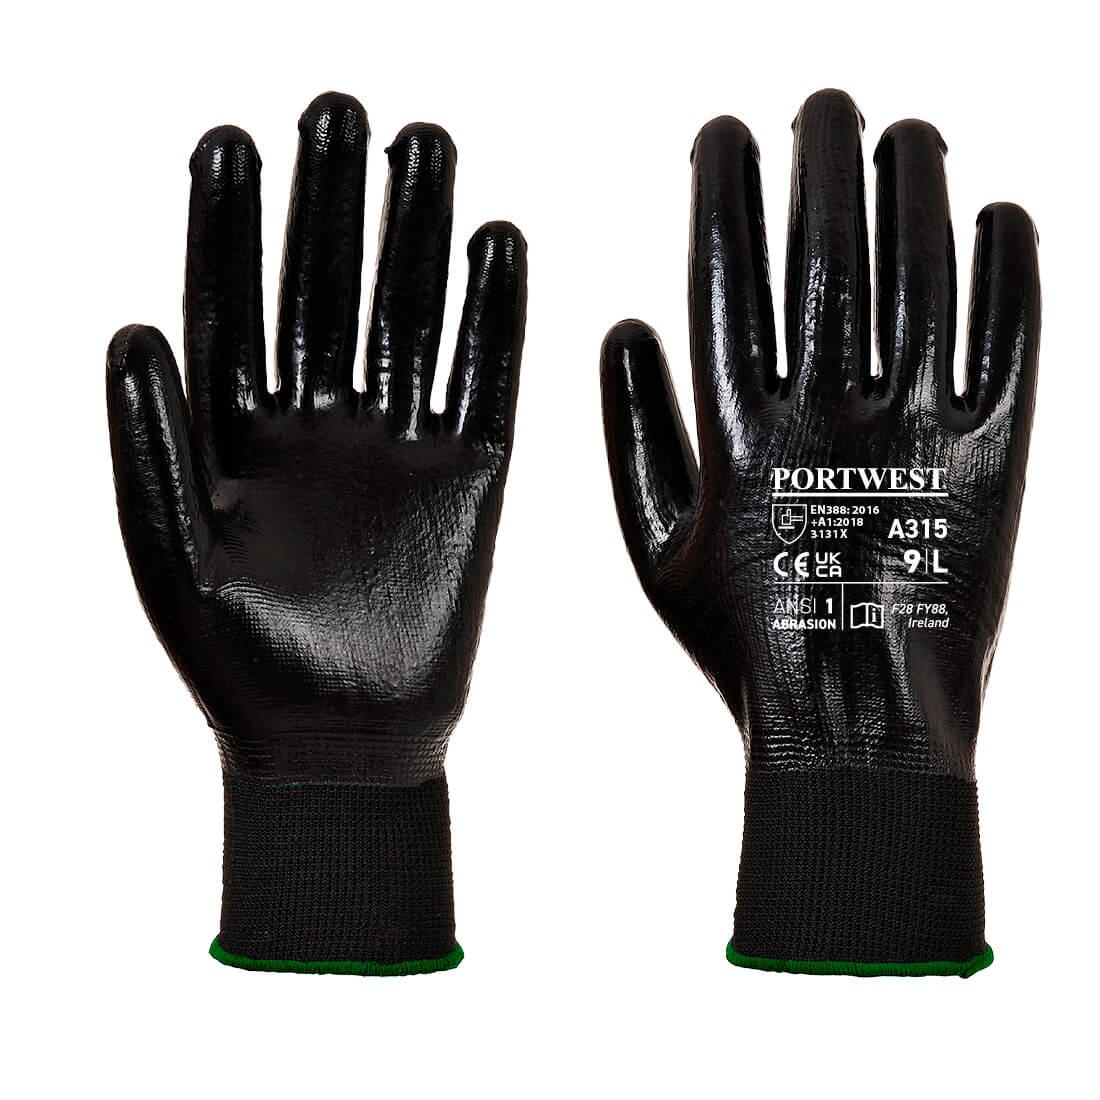 All-Flex Grip Glove, BkBk      Size Large R/Fit